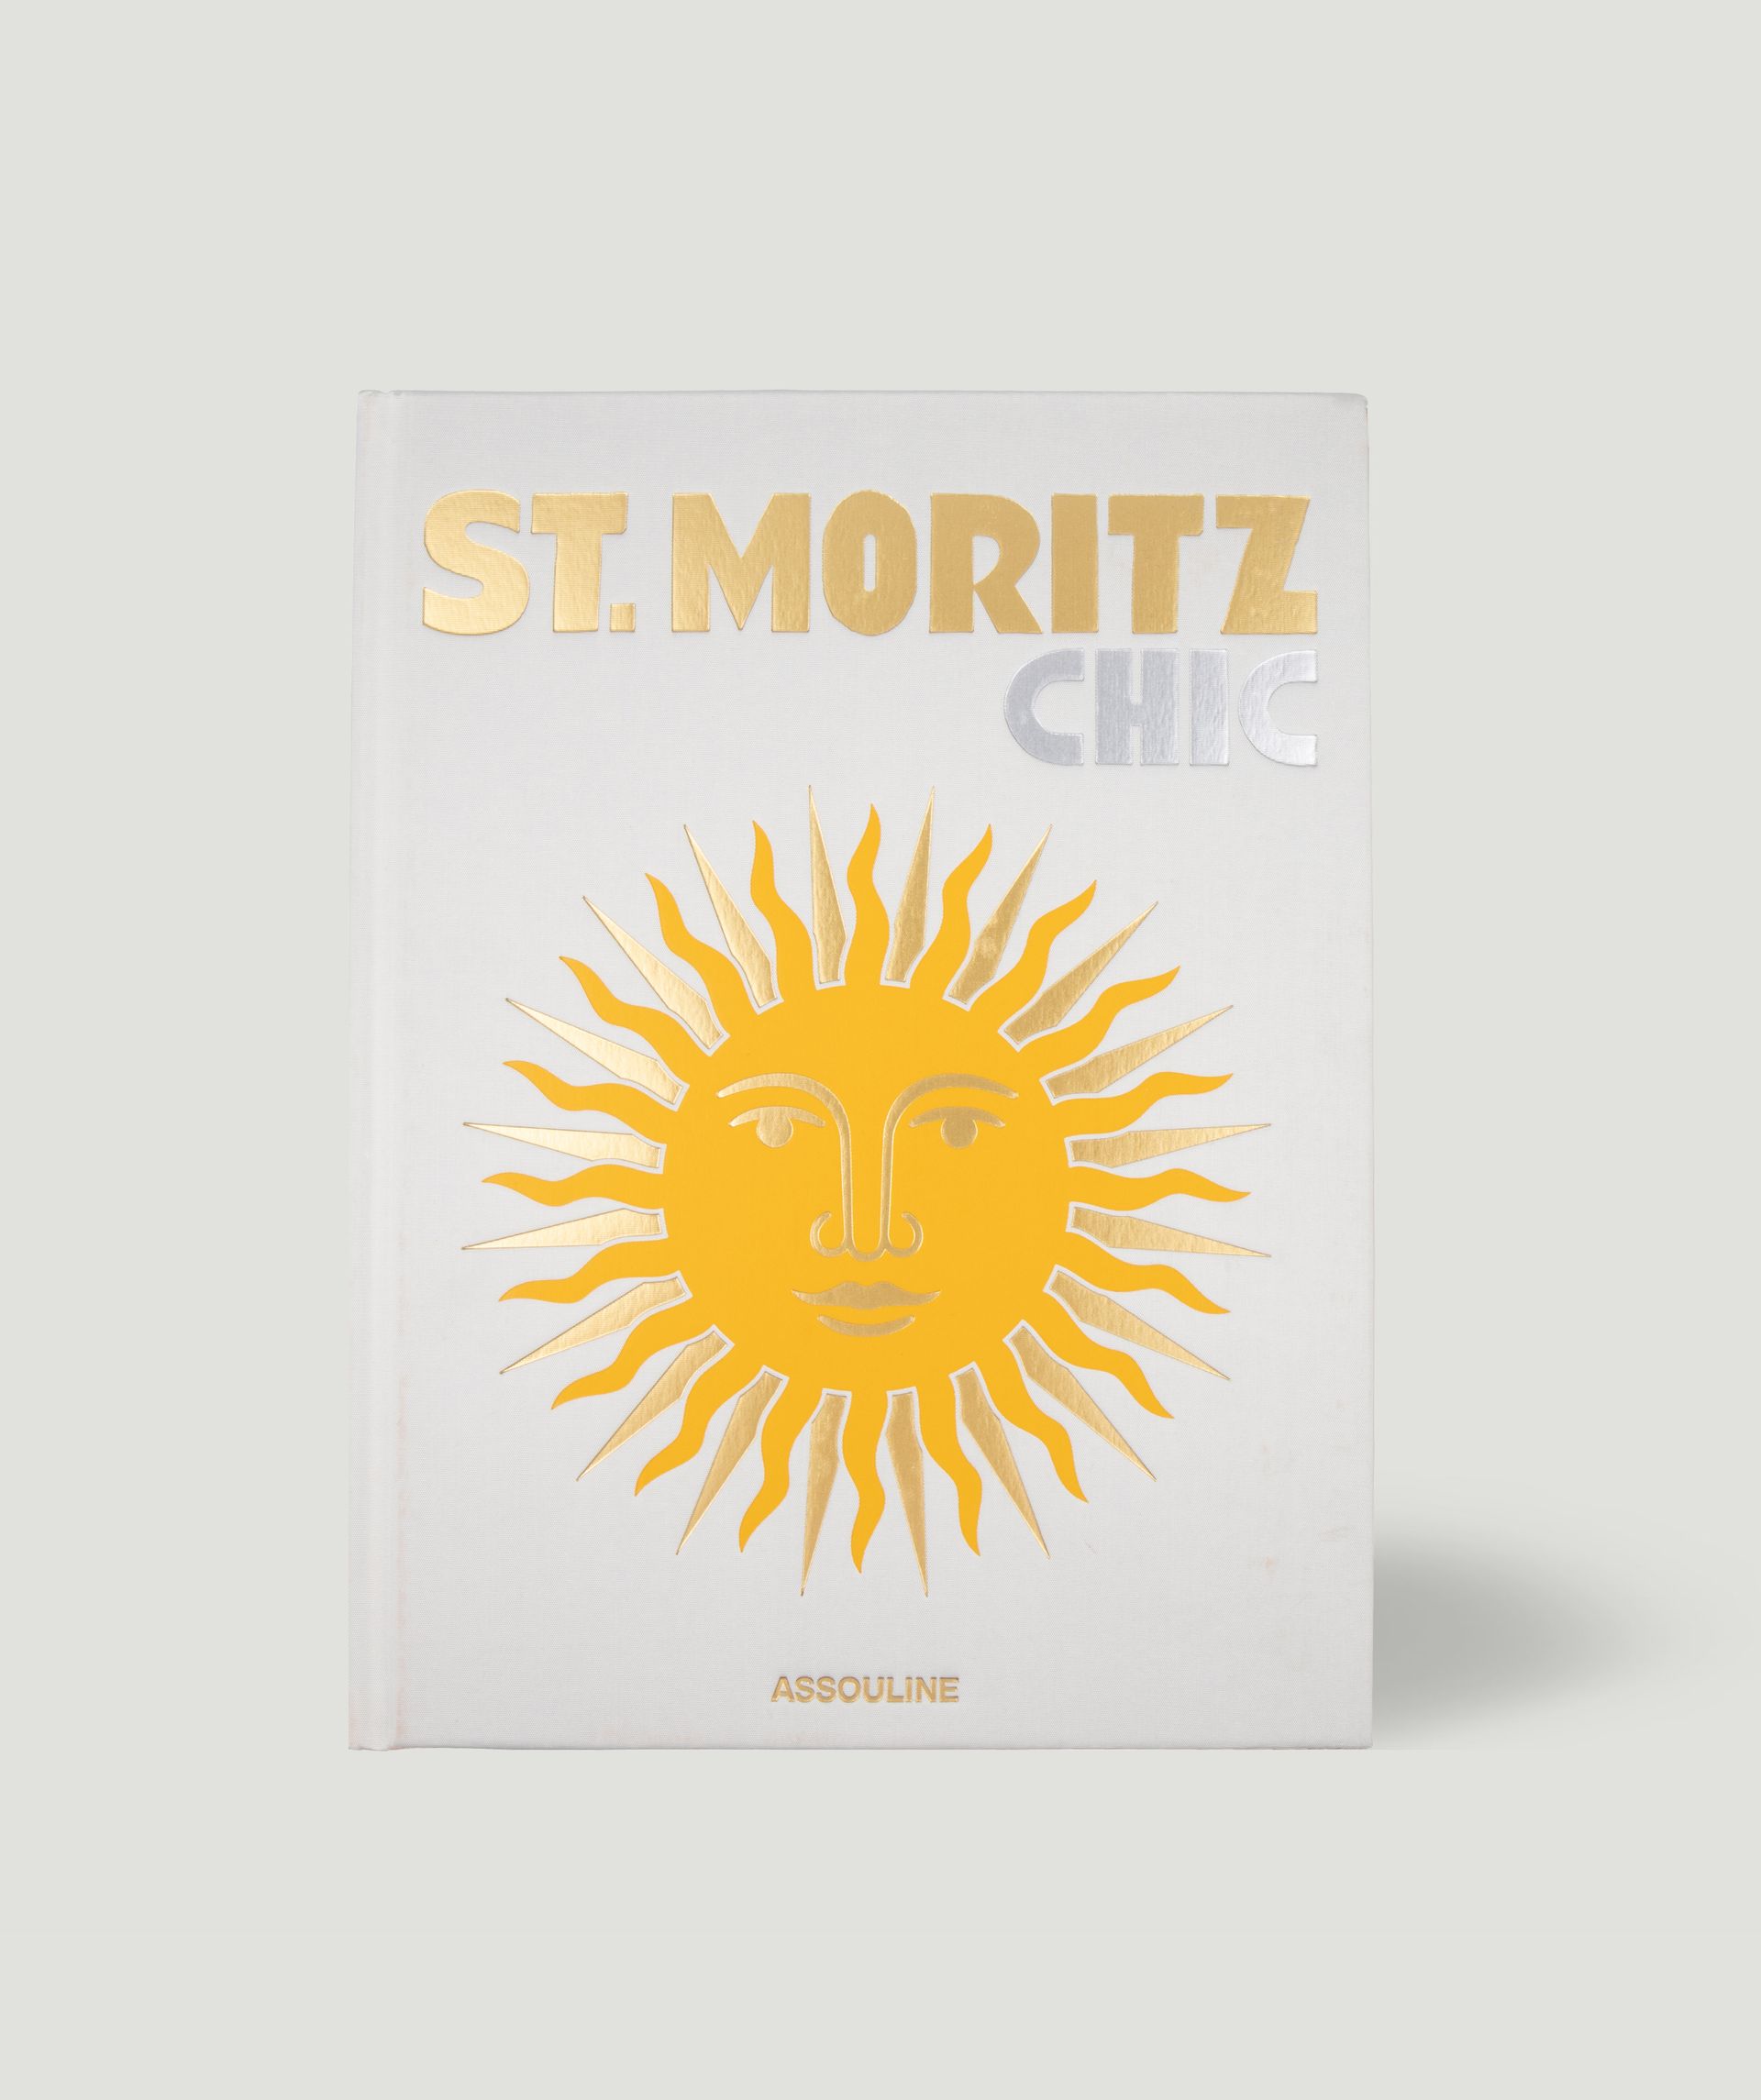 St. Moritz Chic tafelboek